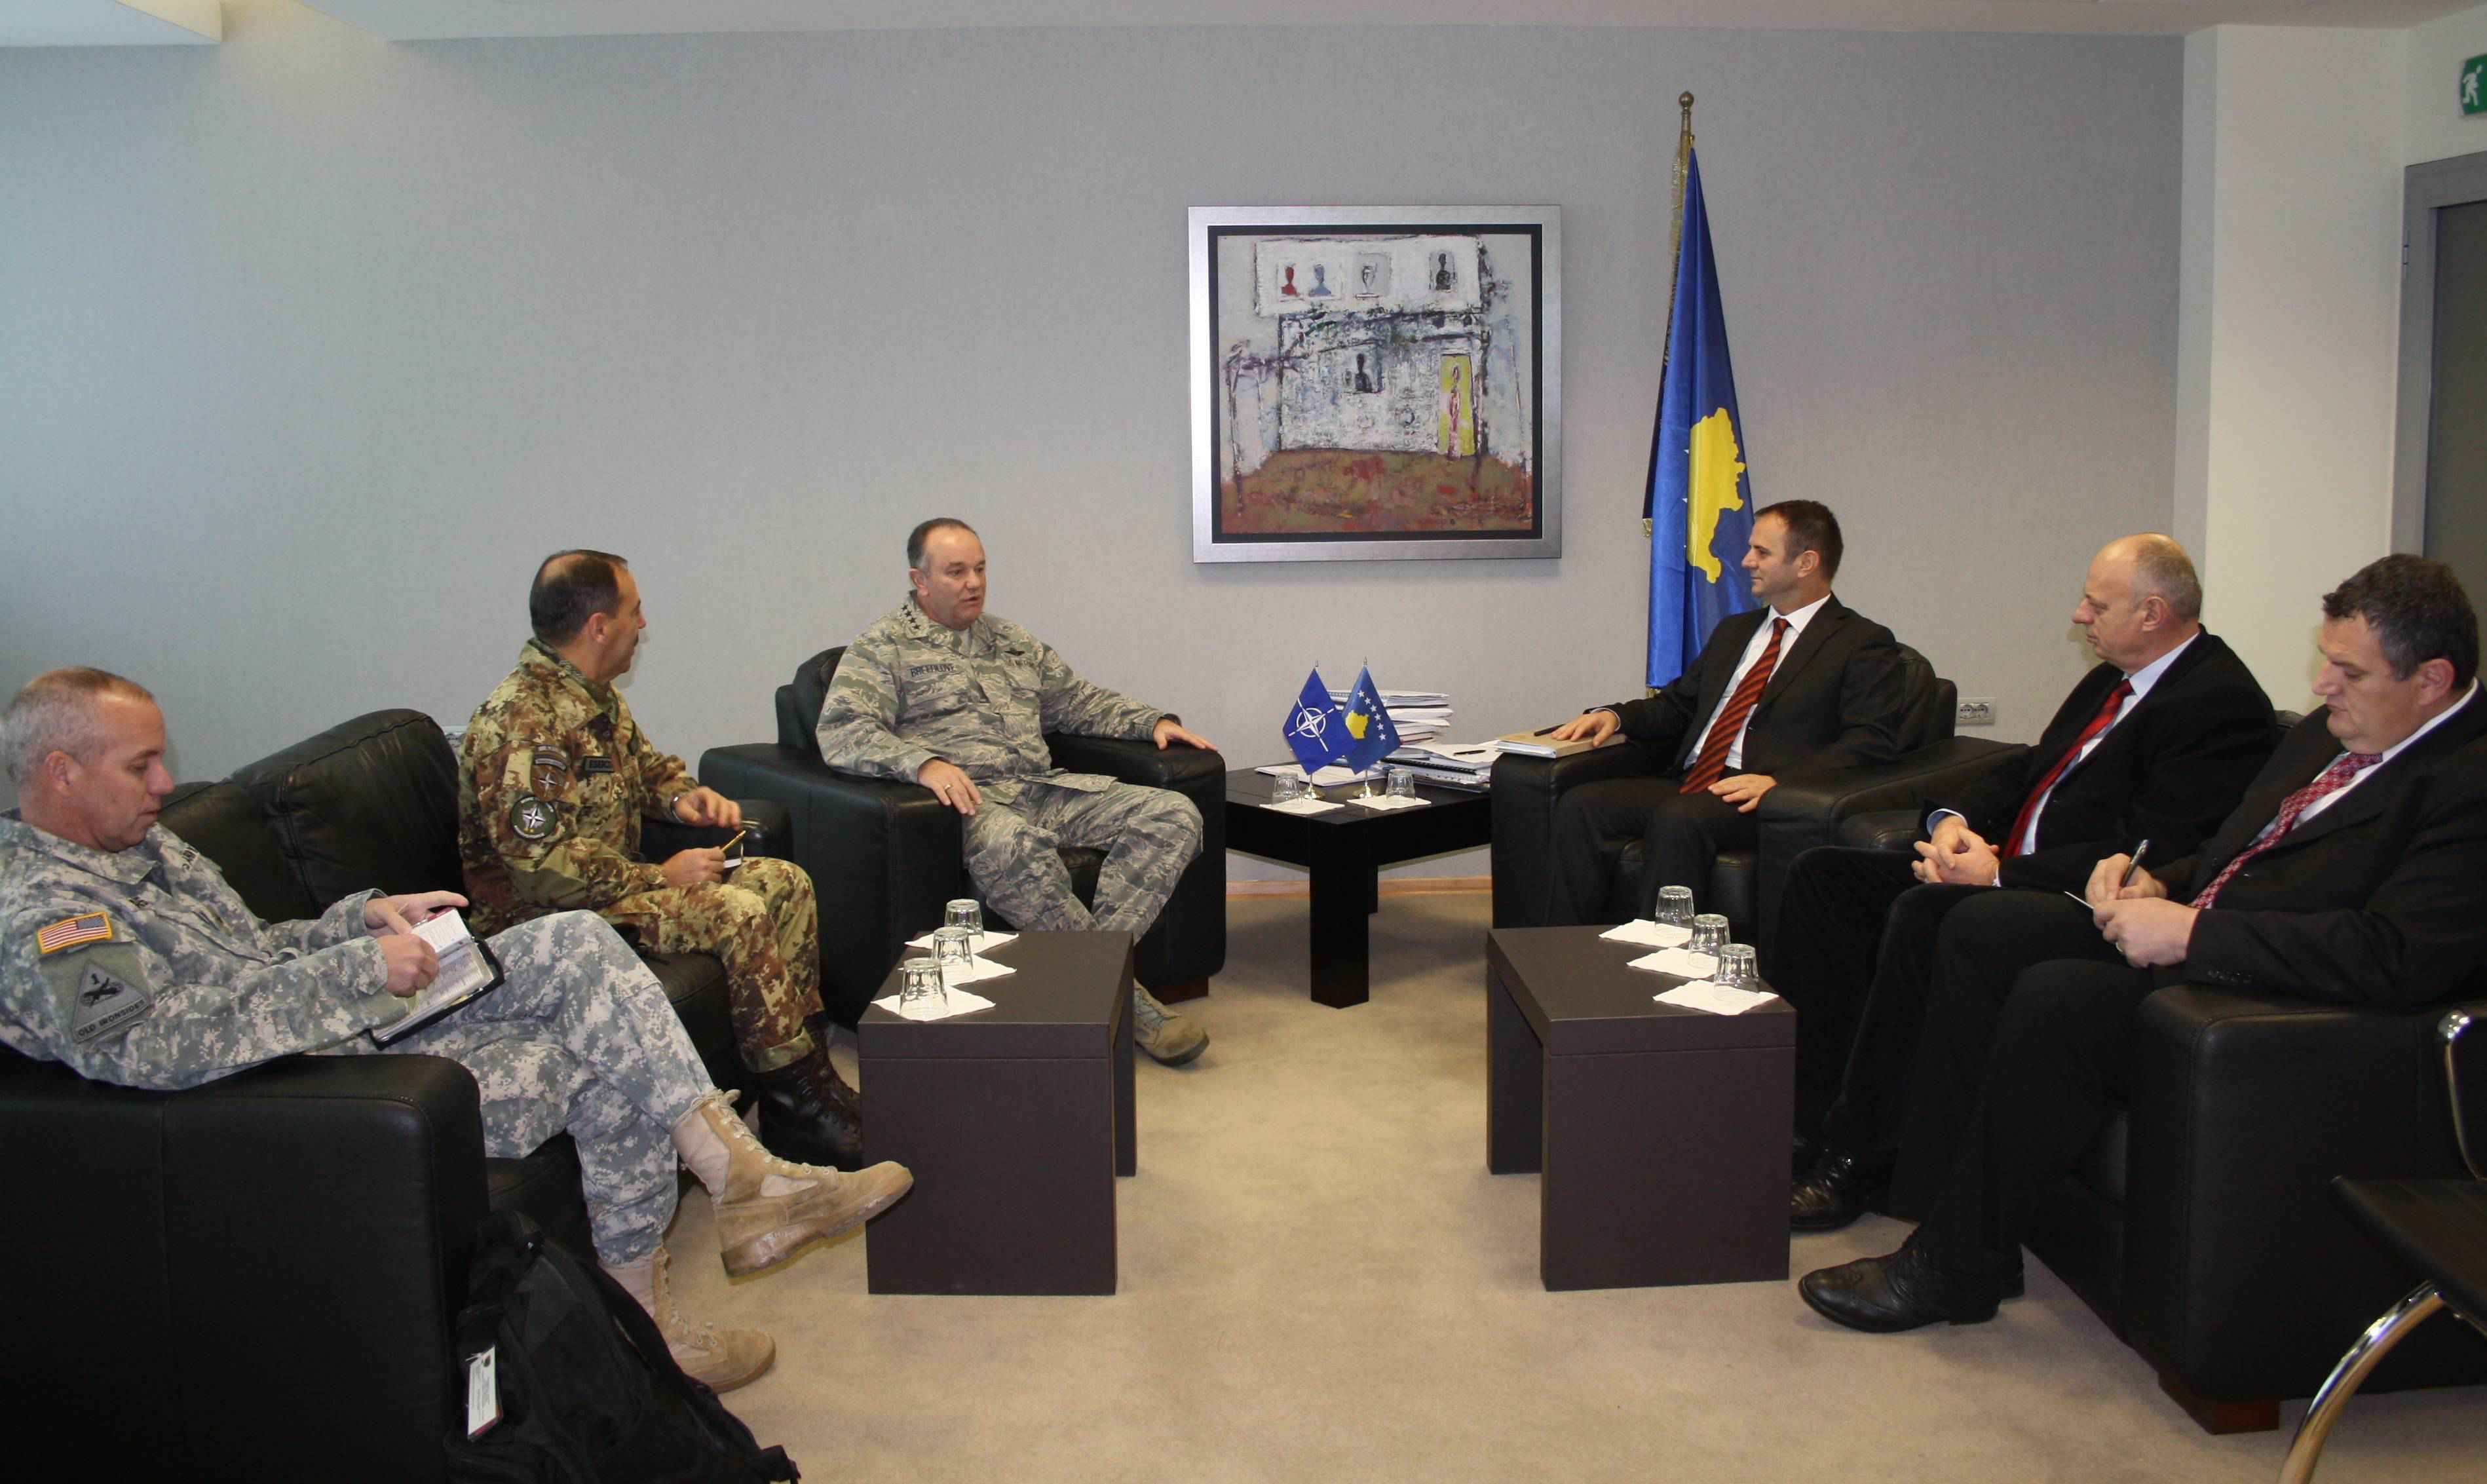  Kuçi: Kontributi i NATO-së është stabilitet për Kosovën dhe rajonin